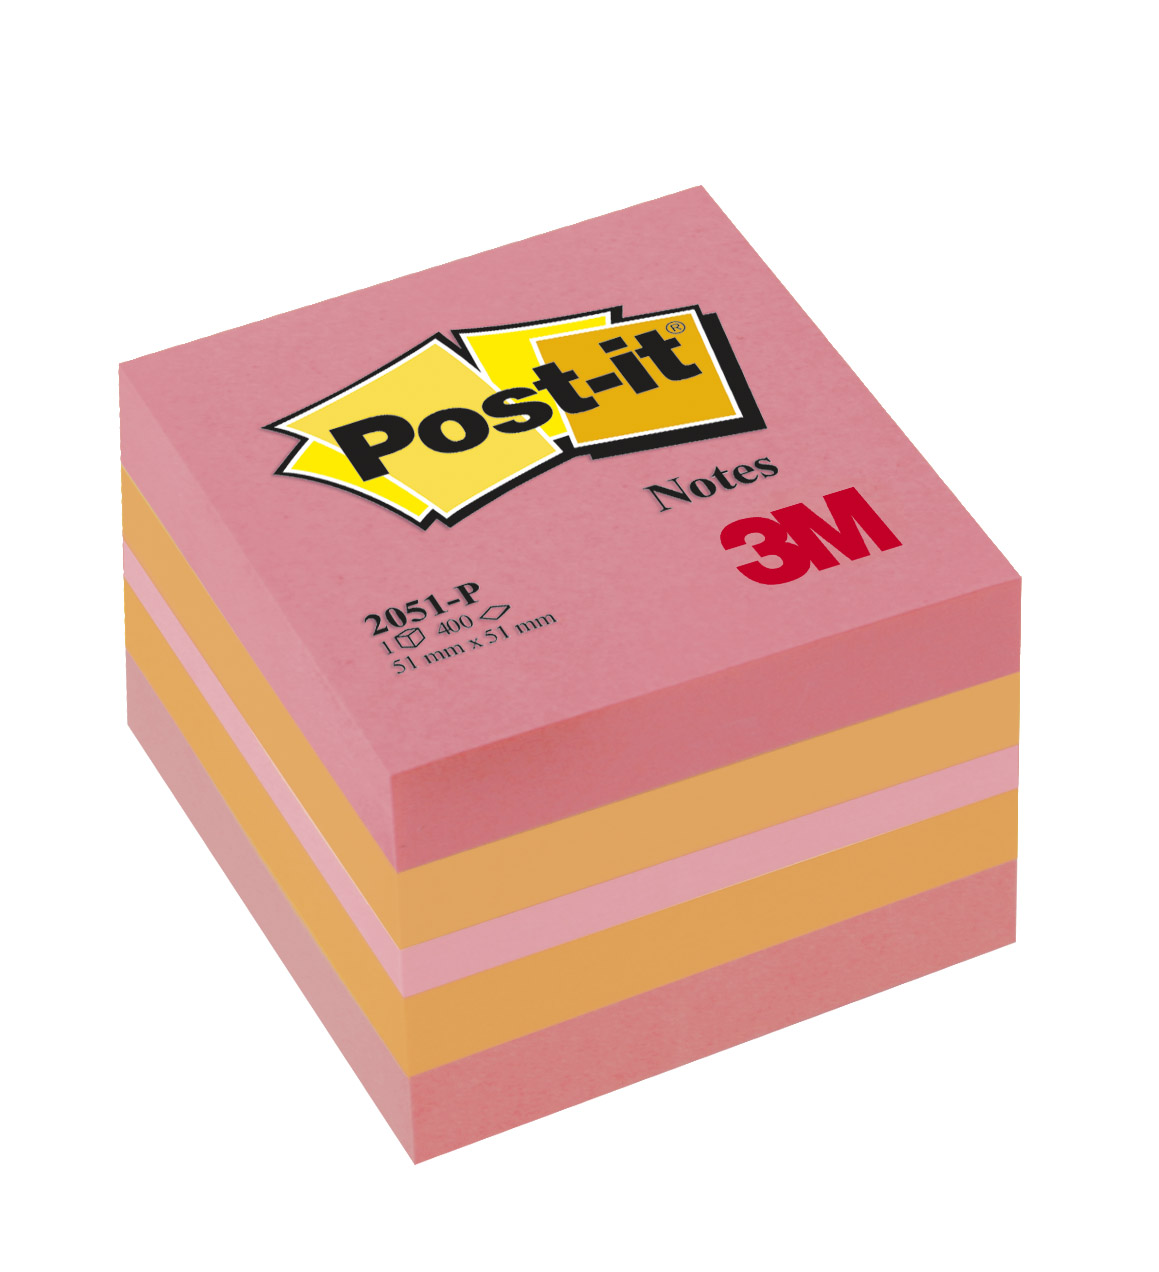 Post-it - Mini Bloc Cube - rose/orange - 400 feuilles - 51 x 51 mm